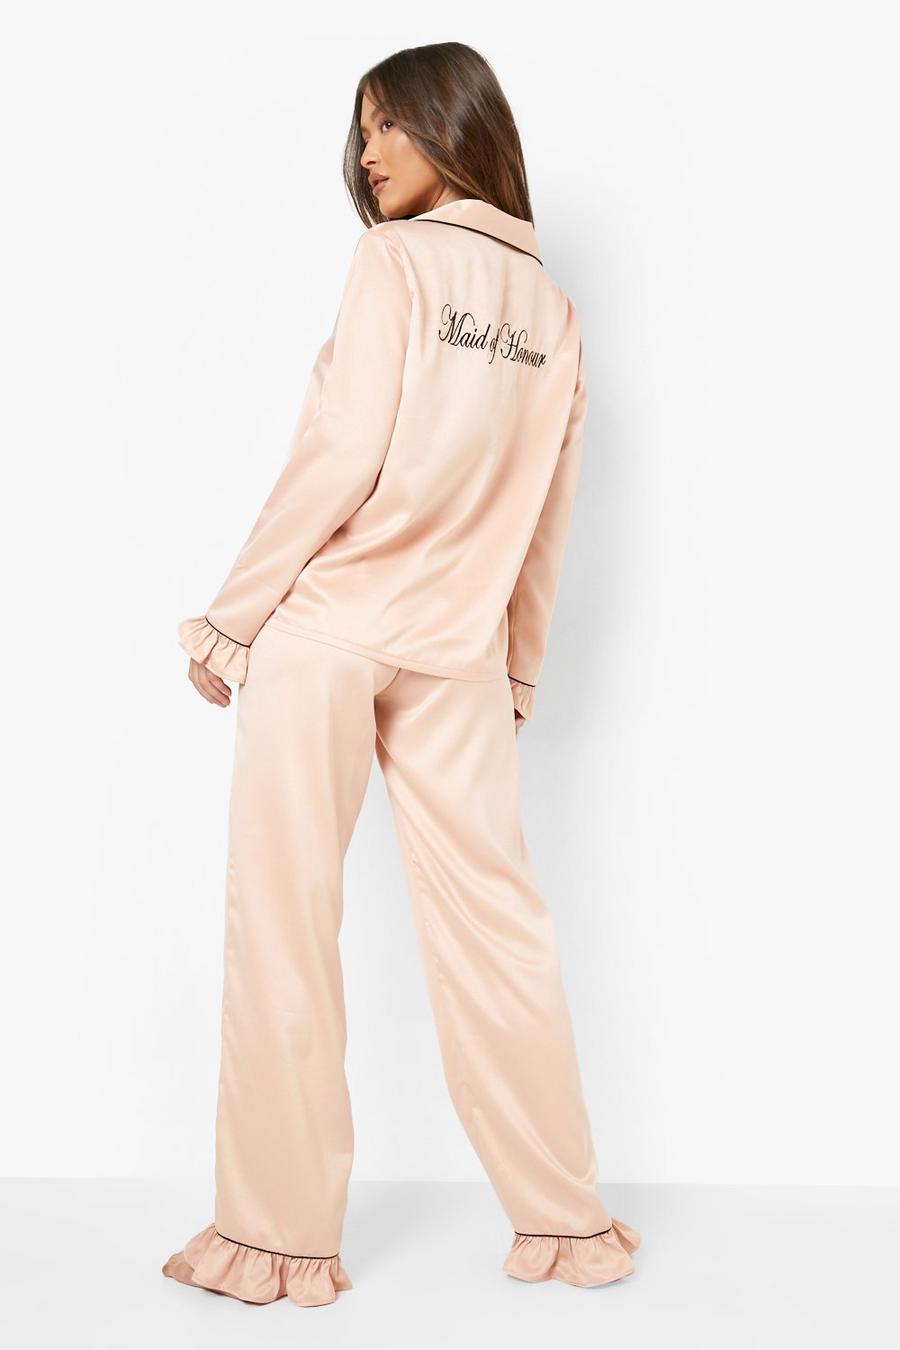 Pijama largo reciclado Premium de pantalón largo con volante y bordado Maid Of Honour, Rose gold metálicos